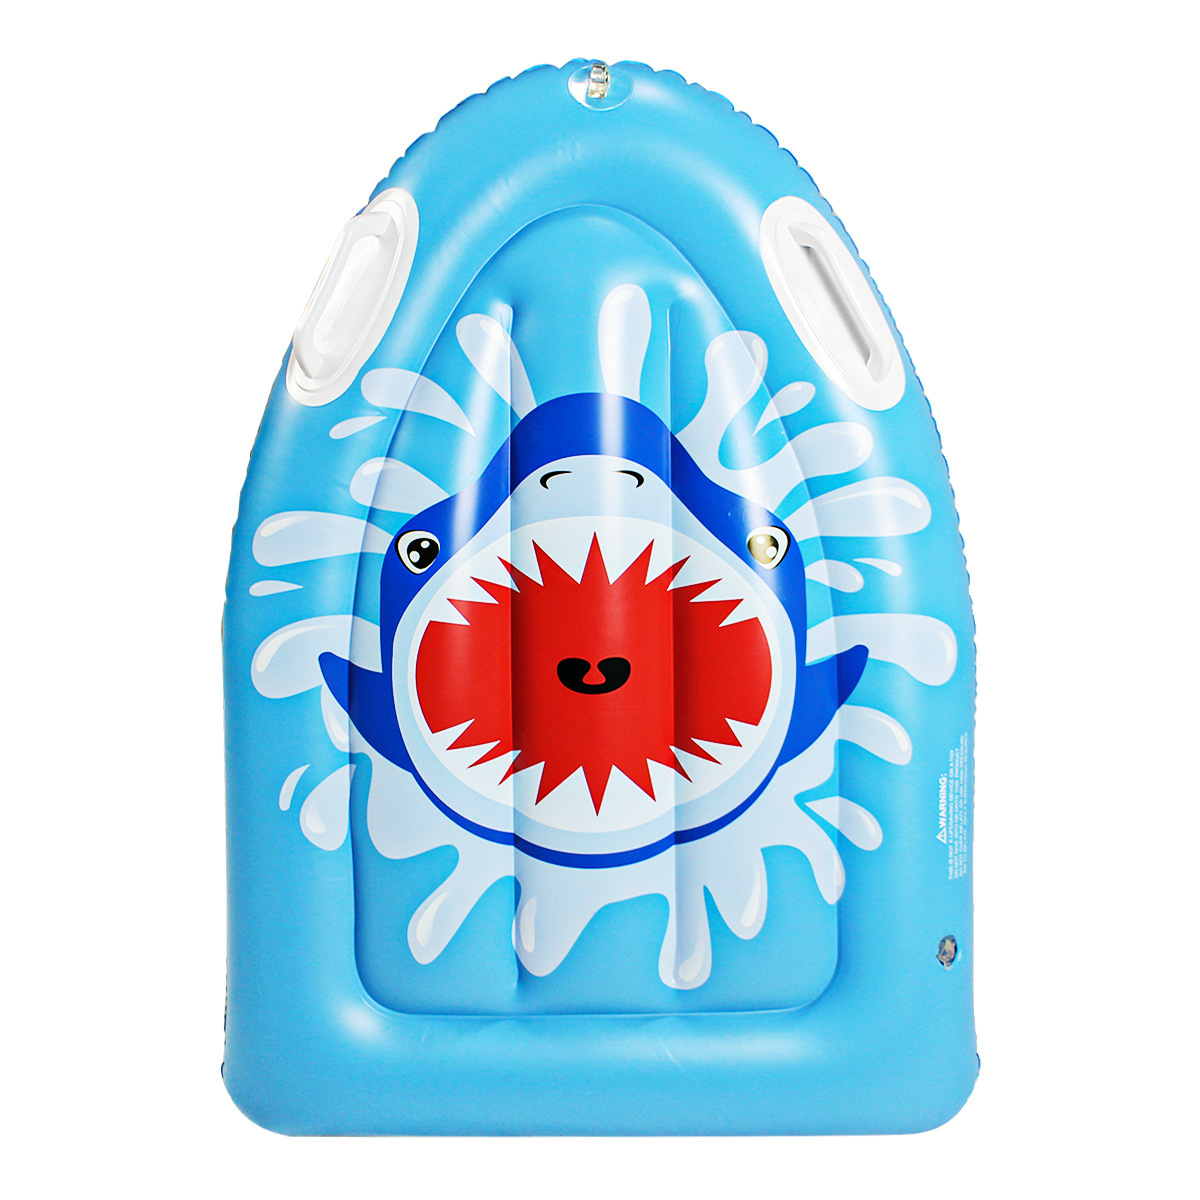 2021夏季新款pvc充气儿童浮排水上玩具鲨鱼浮床海上冲浪板现货|ms